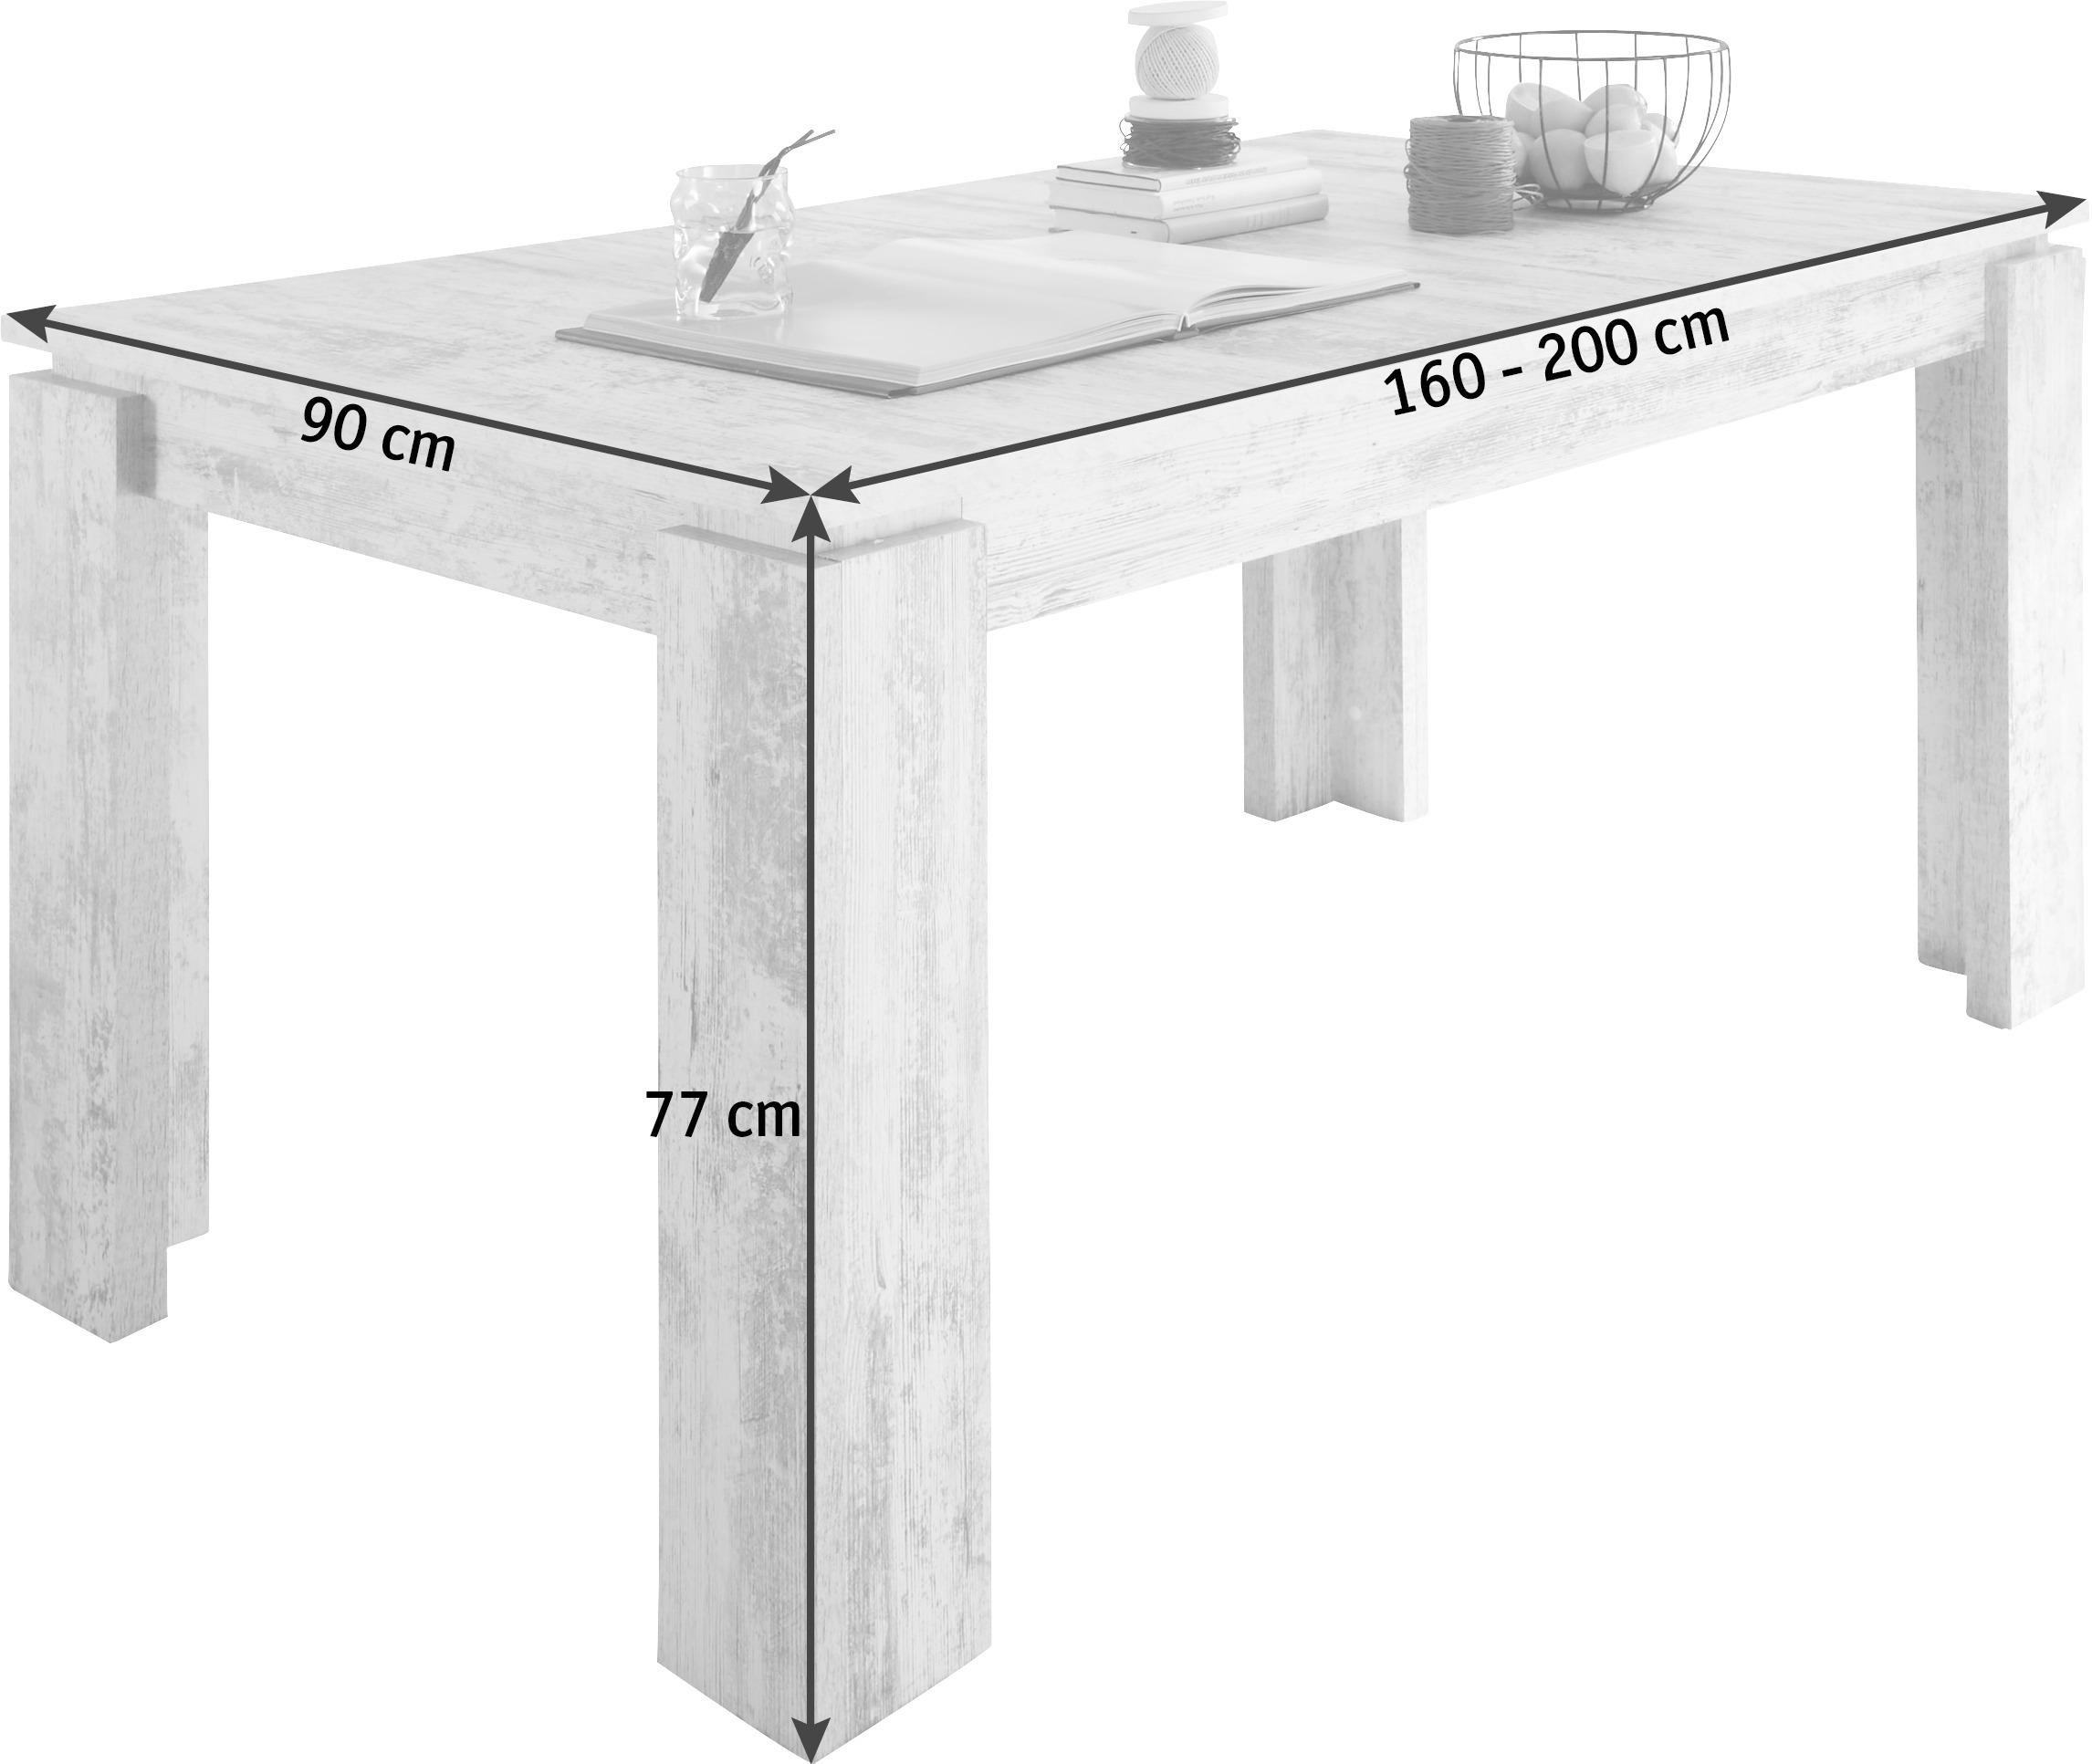 ESSTISCH 160-200/90/77 cm Weiß rechteckig  - Weiß, Design (160-200/90/77cm) - Carryhome